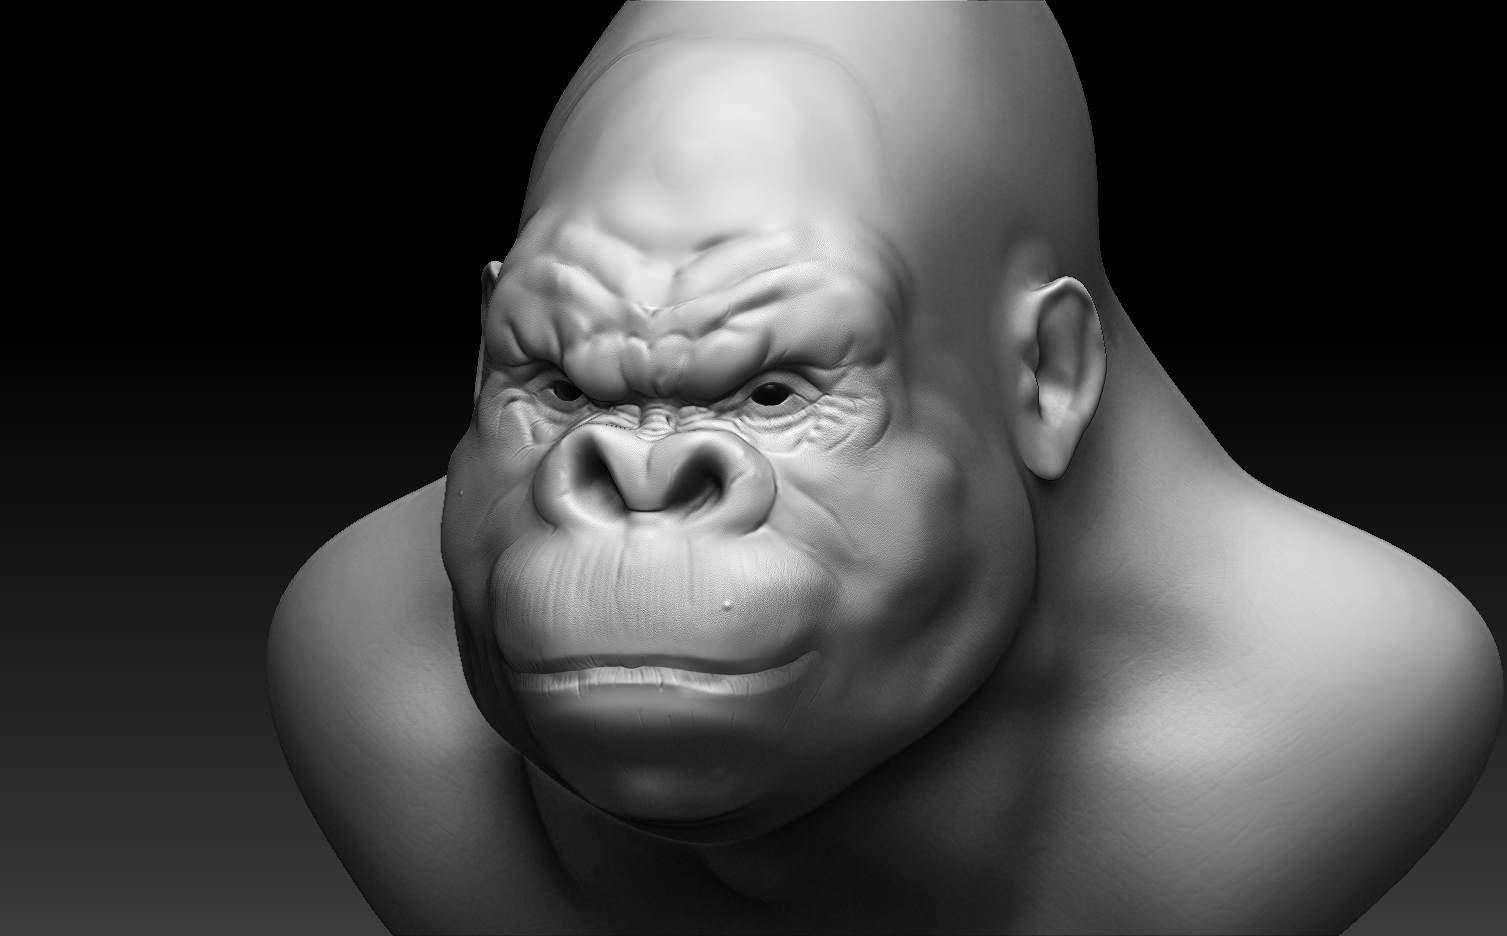 gorilla test render 1.jpg